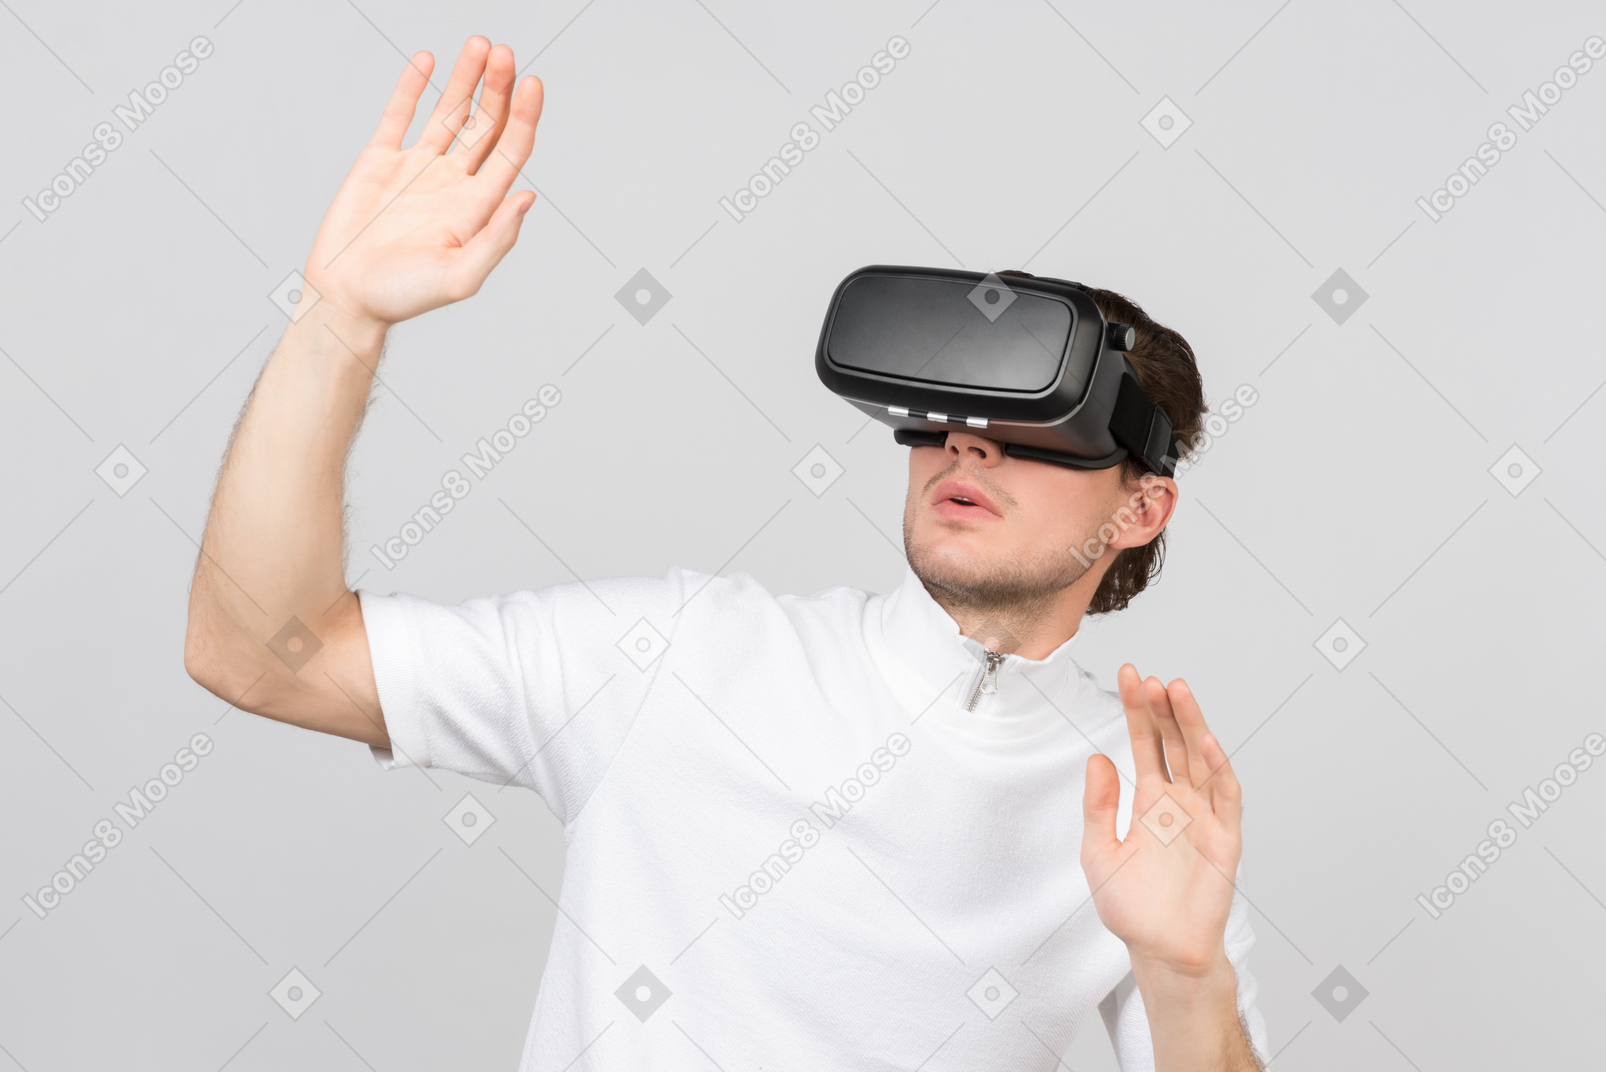 Mann mit virtual-reality-headset steht mit erhobenen händen zur kapitulation